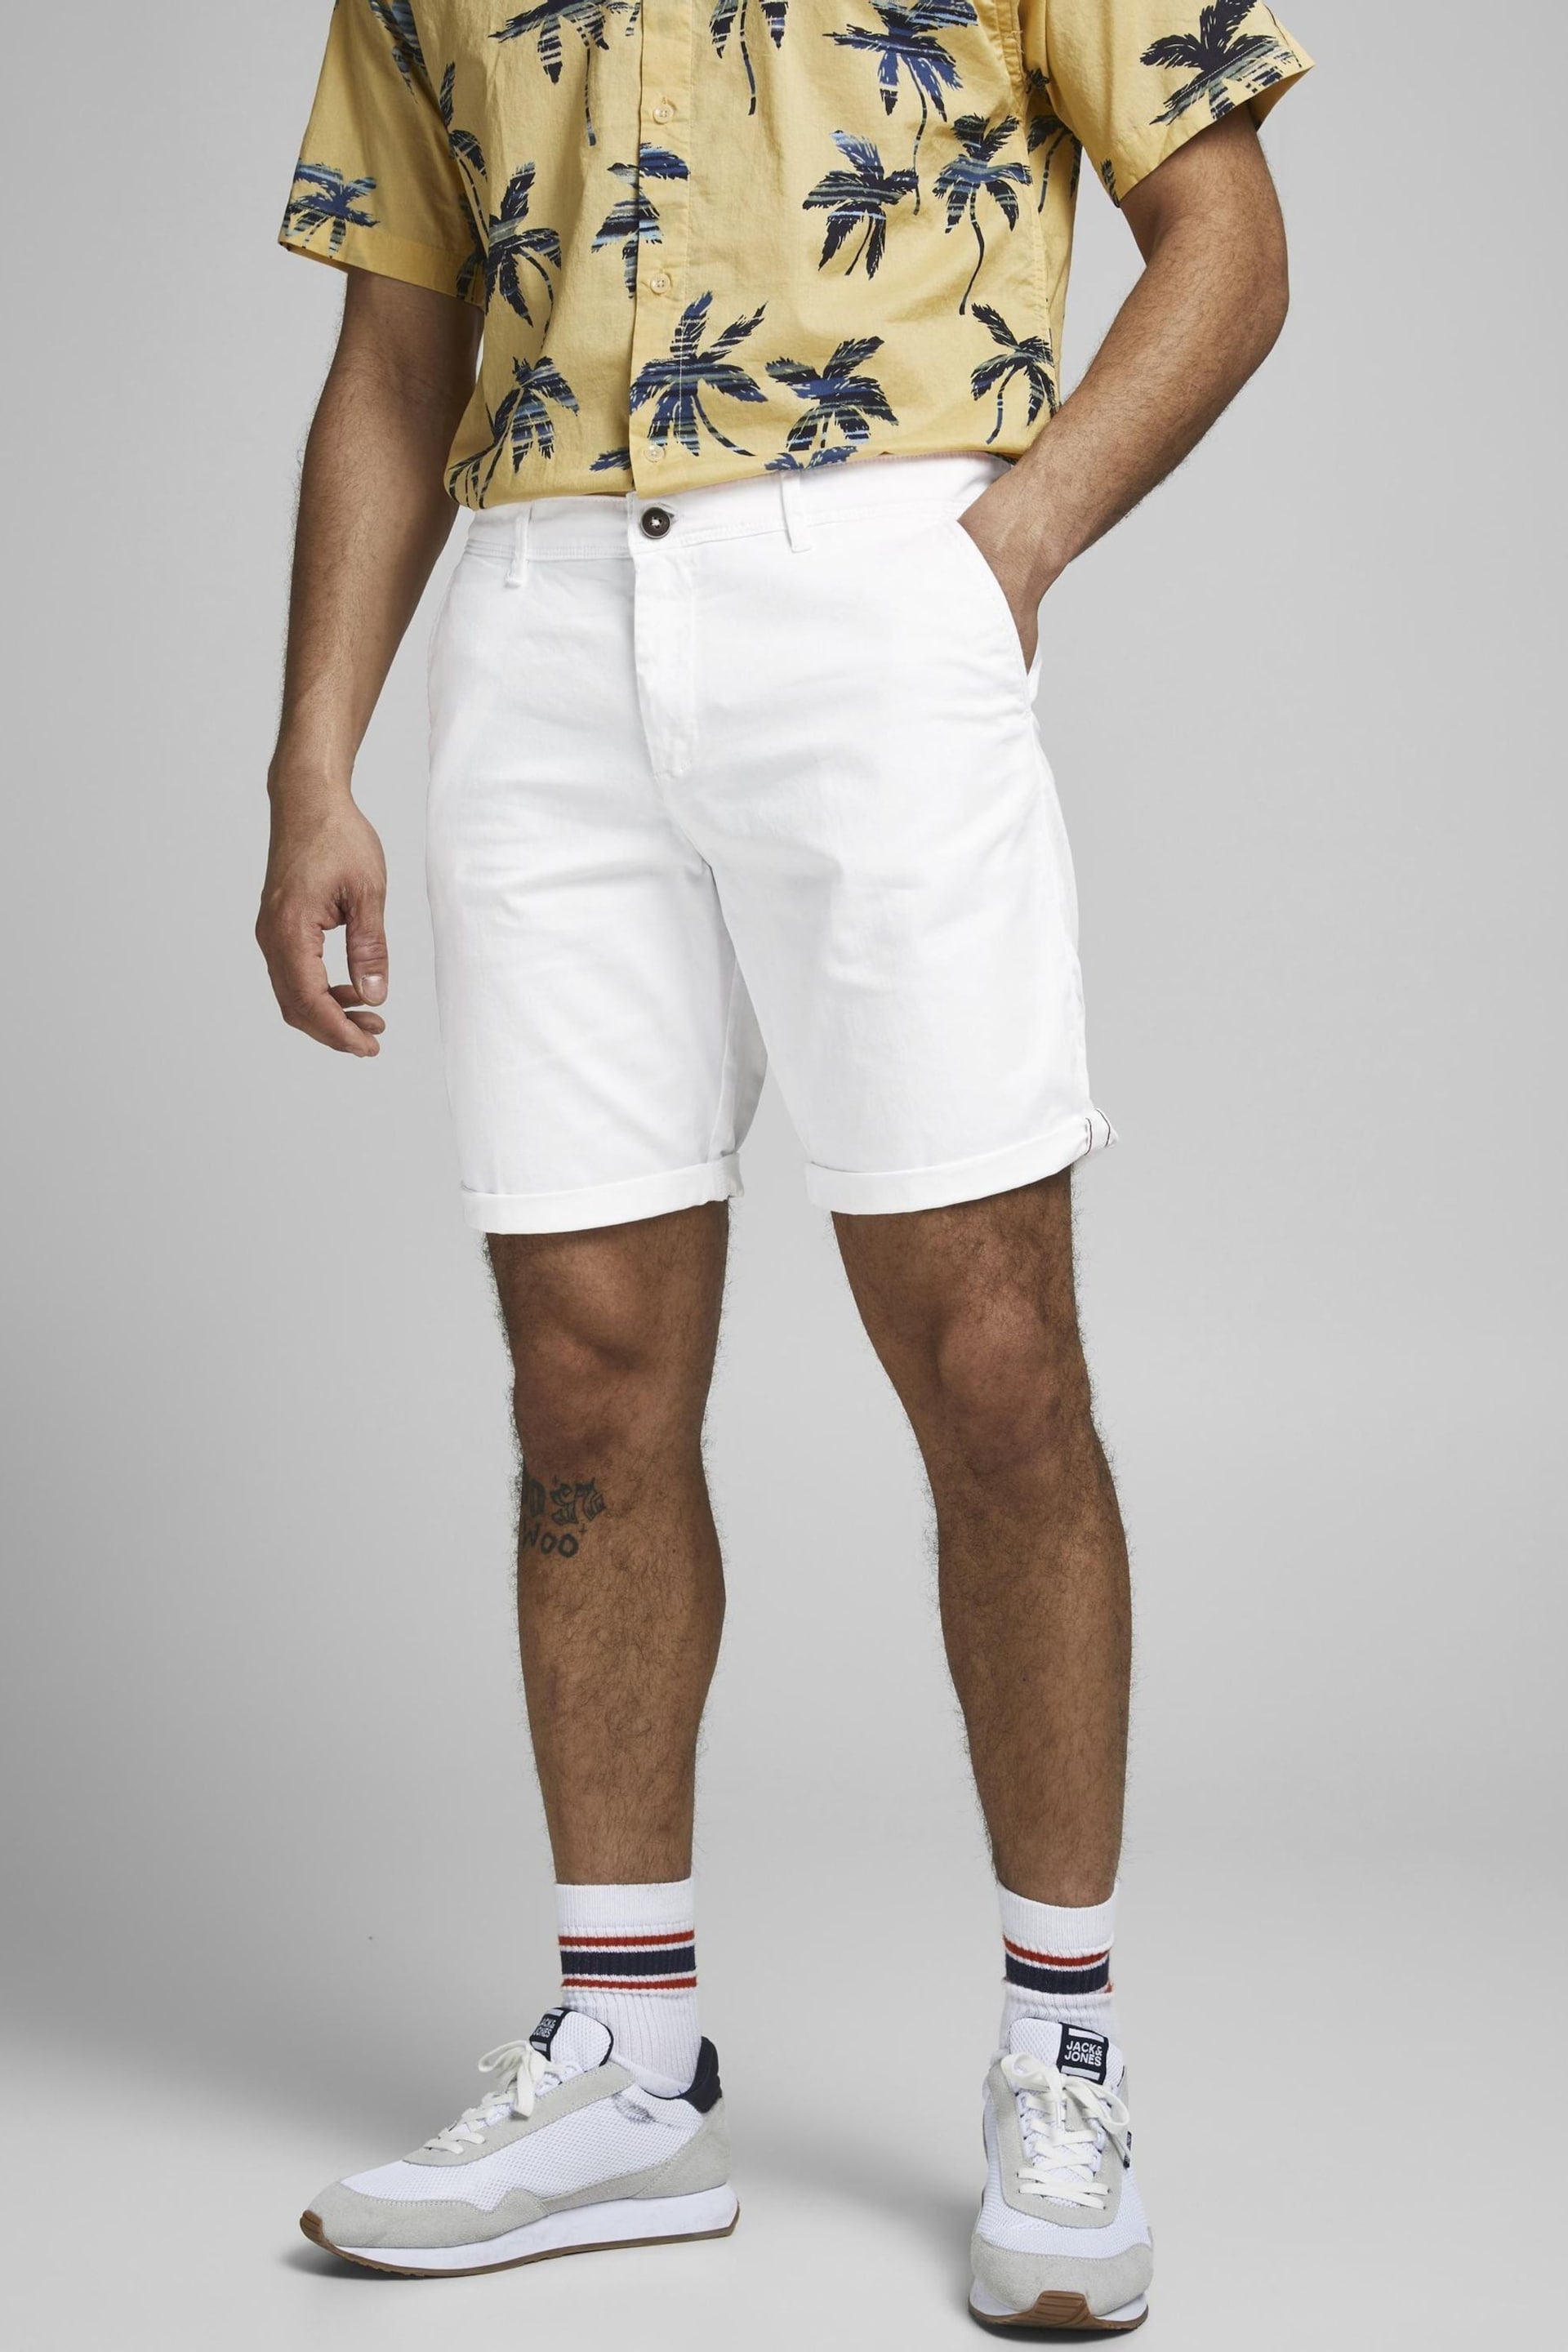 JACK & JONES White Slim Chino Shorts - Image 1 of 7